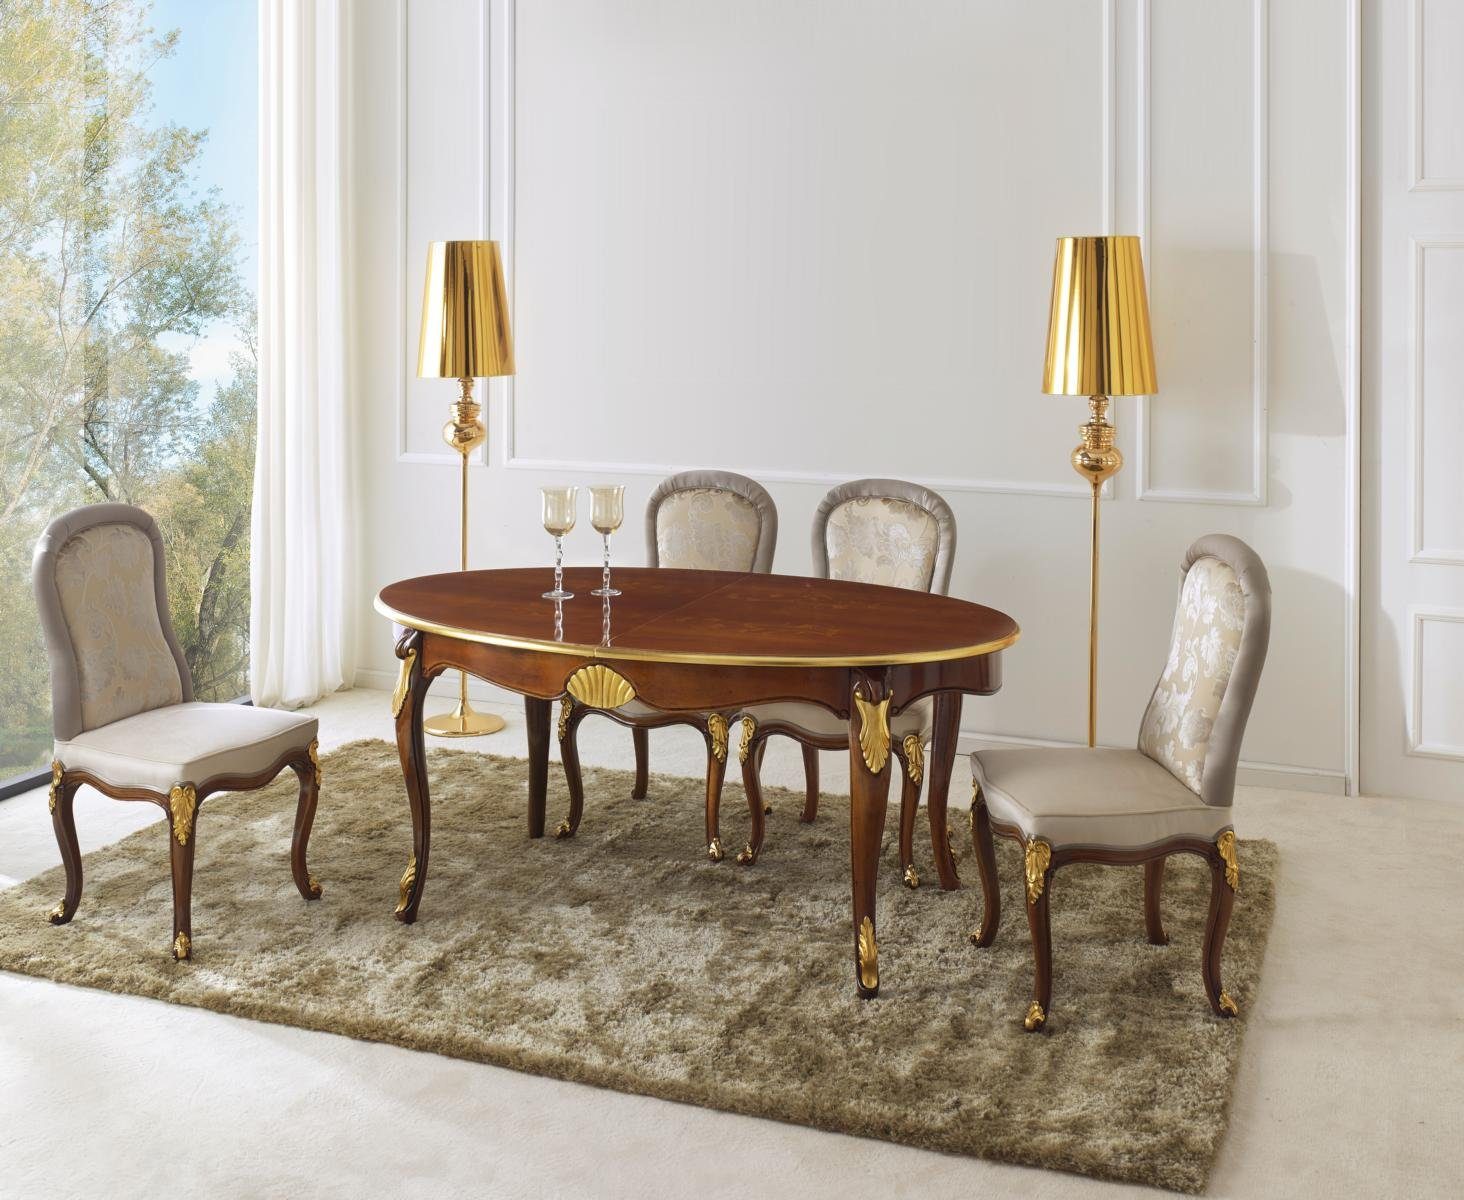 JVmoebel Esstisch Ovaler Tisch Italienische Möbel Luxus Esstisch Esszimmer  Holz Klassischer Stil